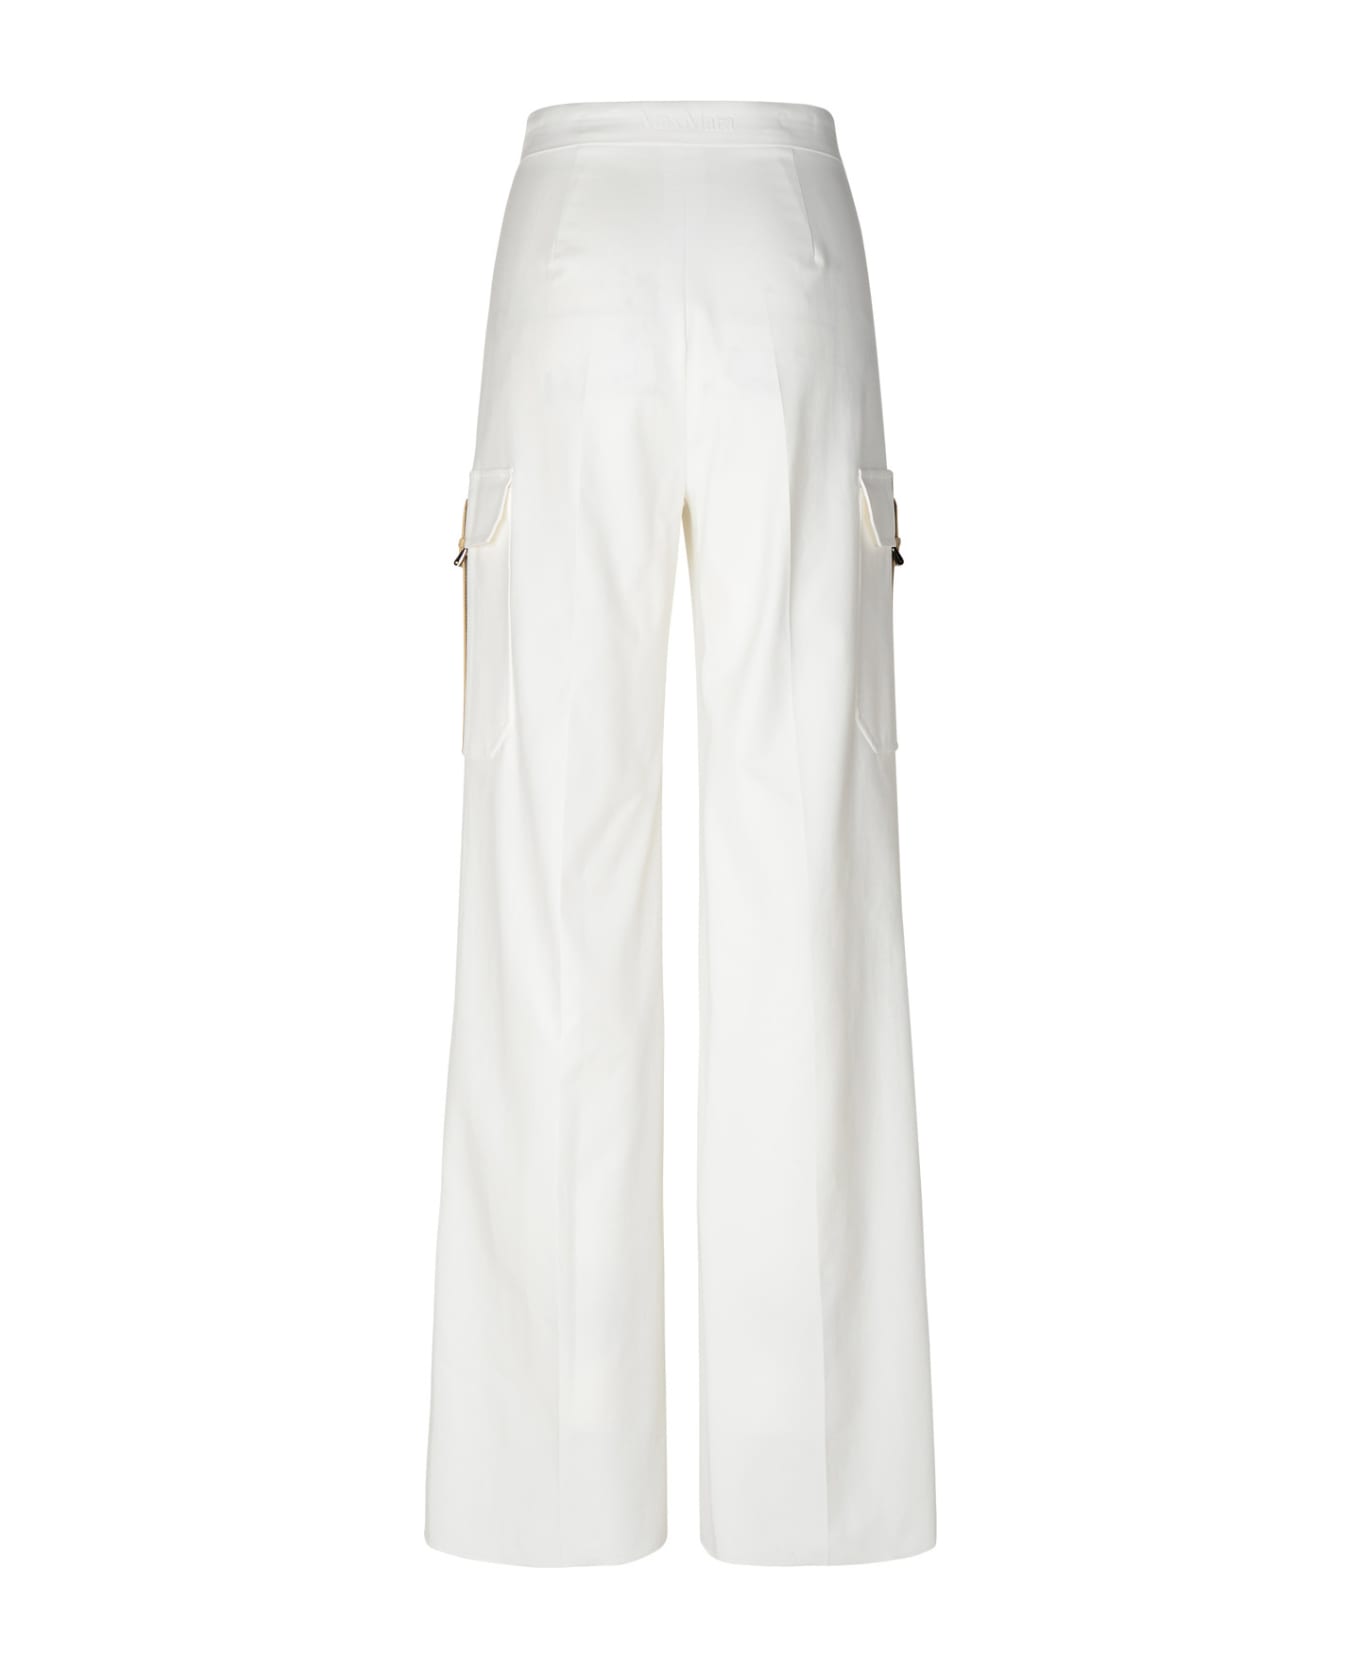 Max Mara 'edda' White Cotton Blend Cargo Pants - White ボトムス